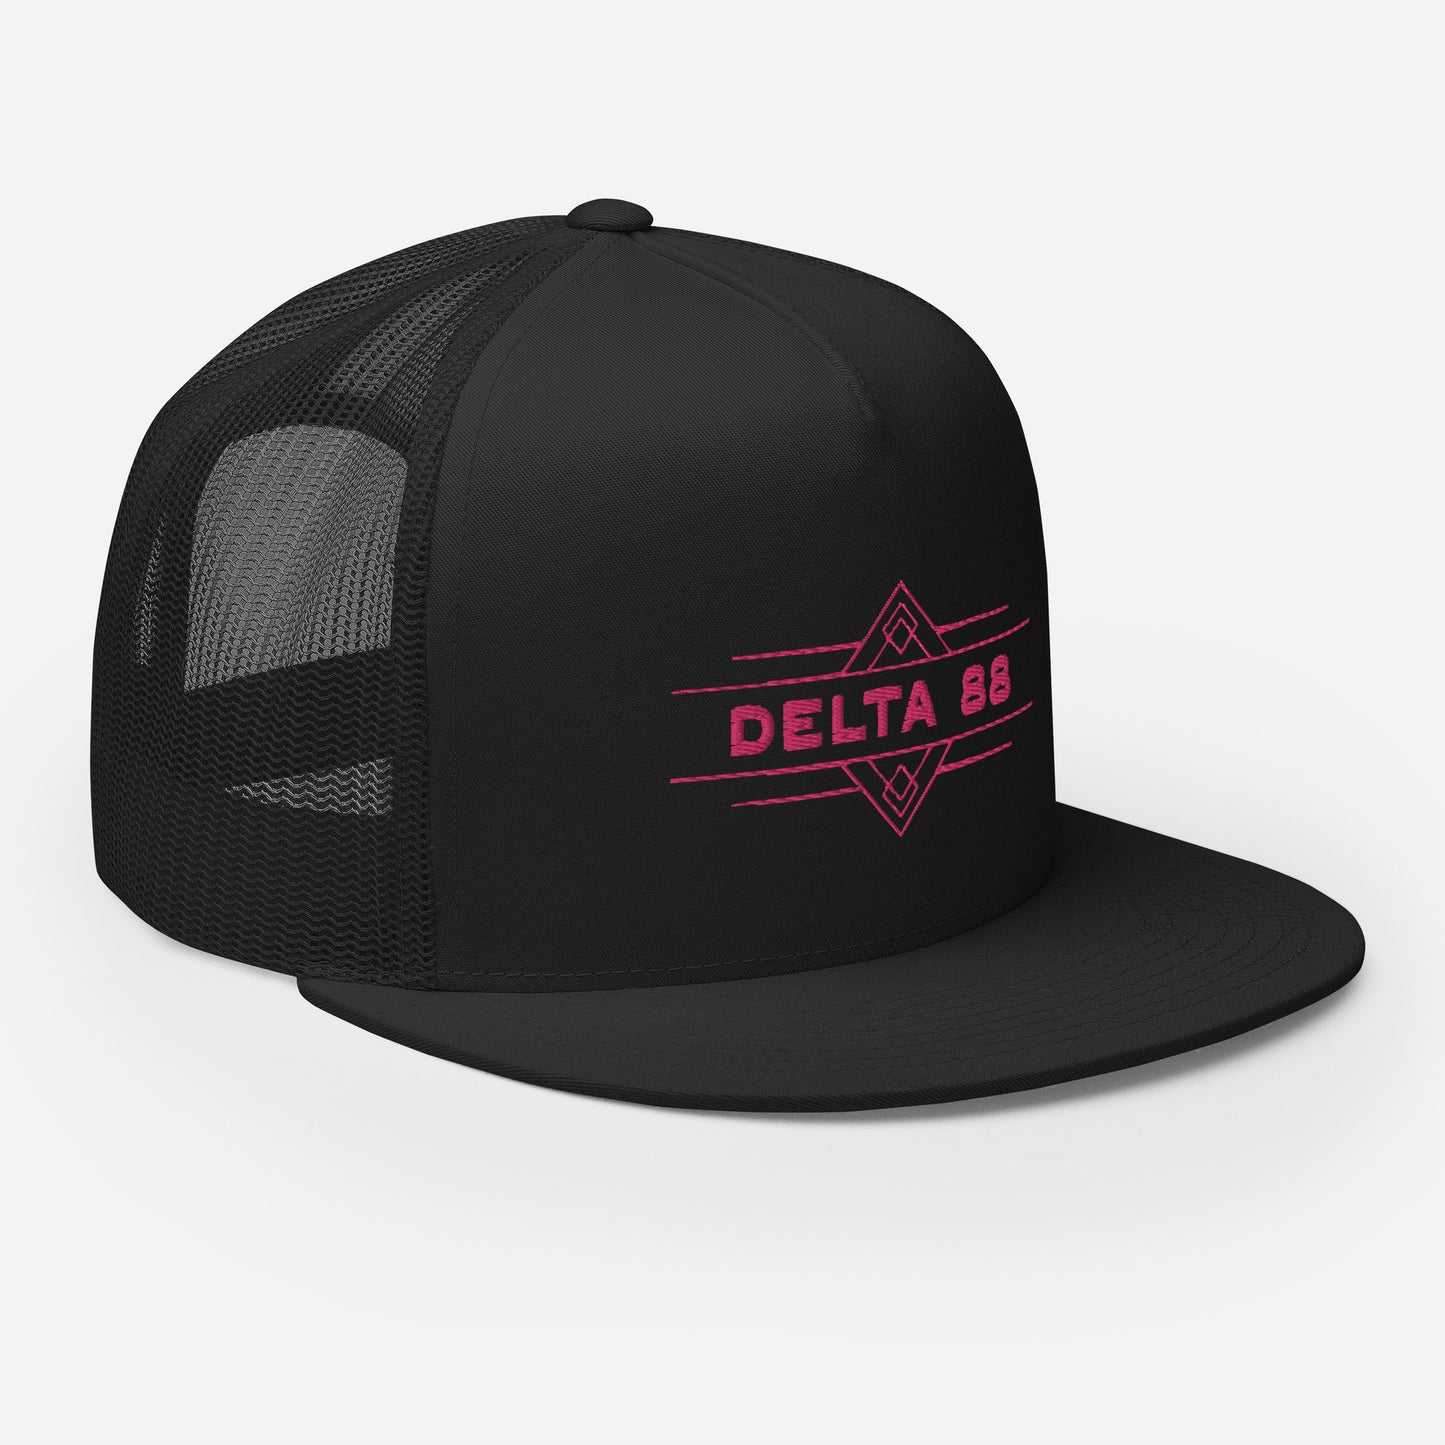 Delta 88 Classic Black/Pink Cap